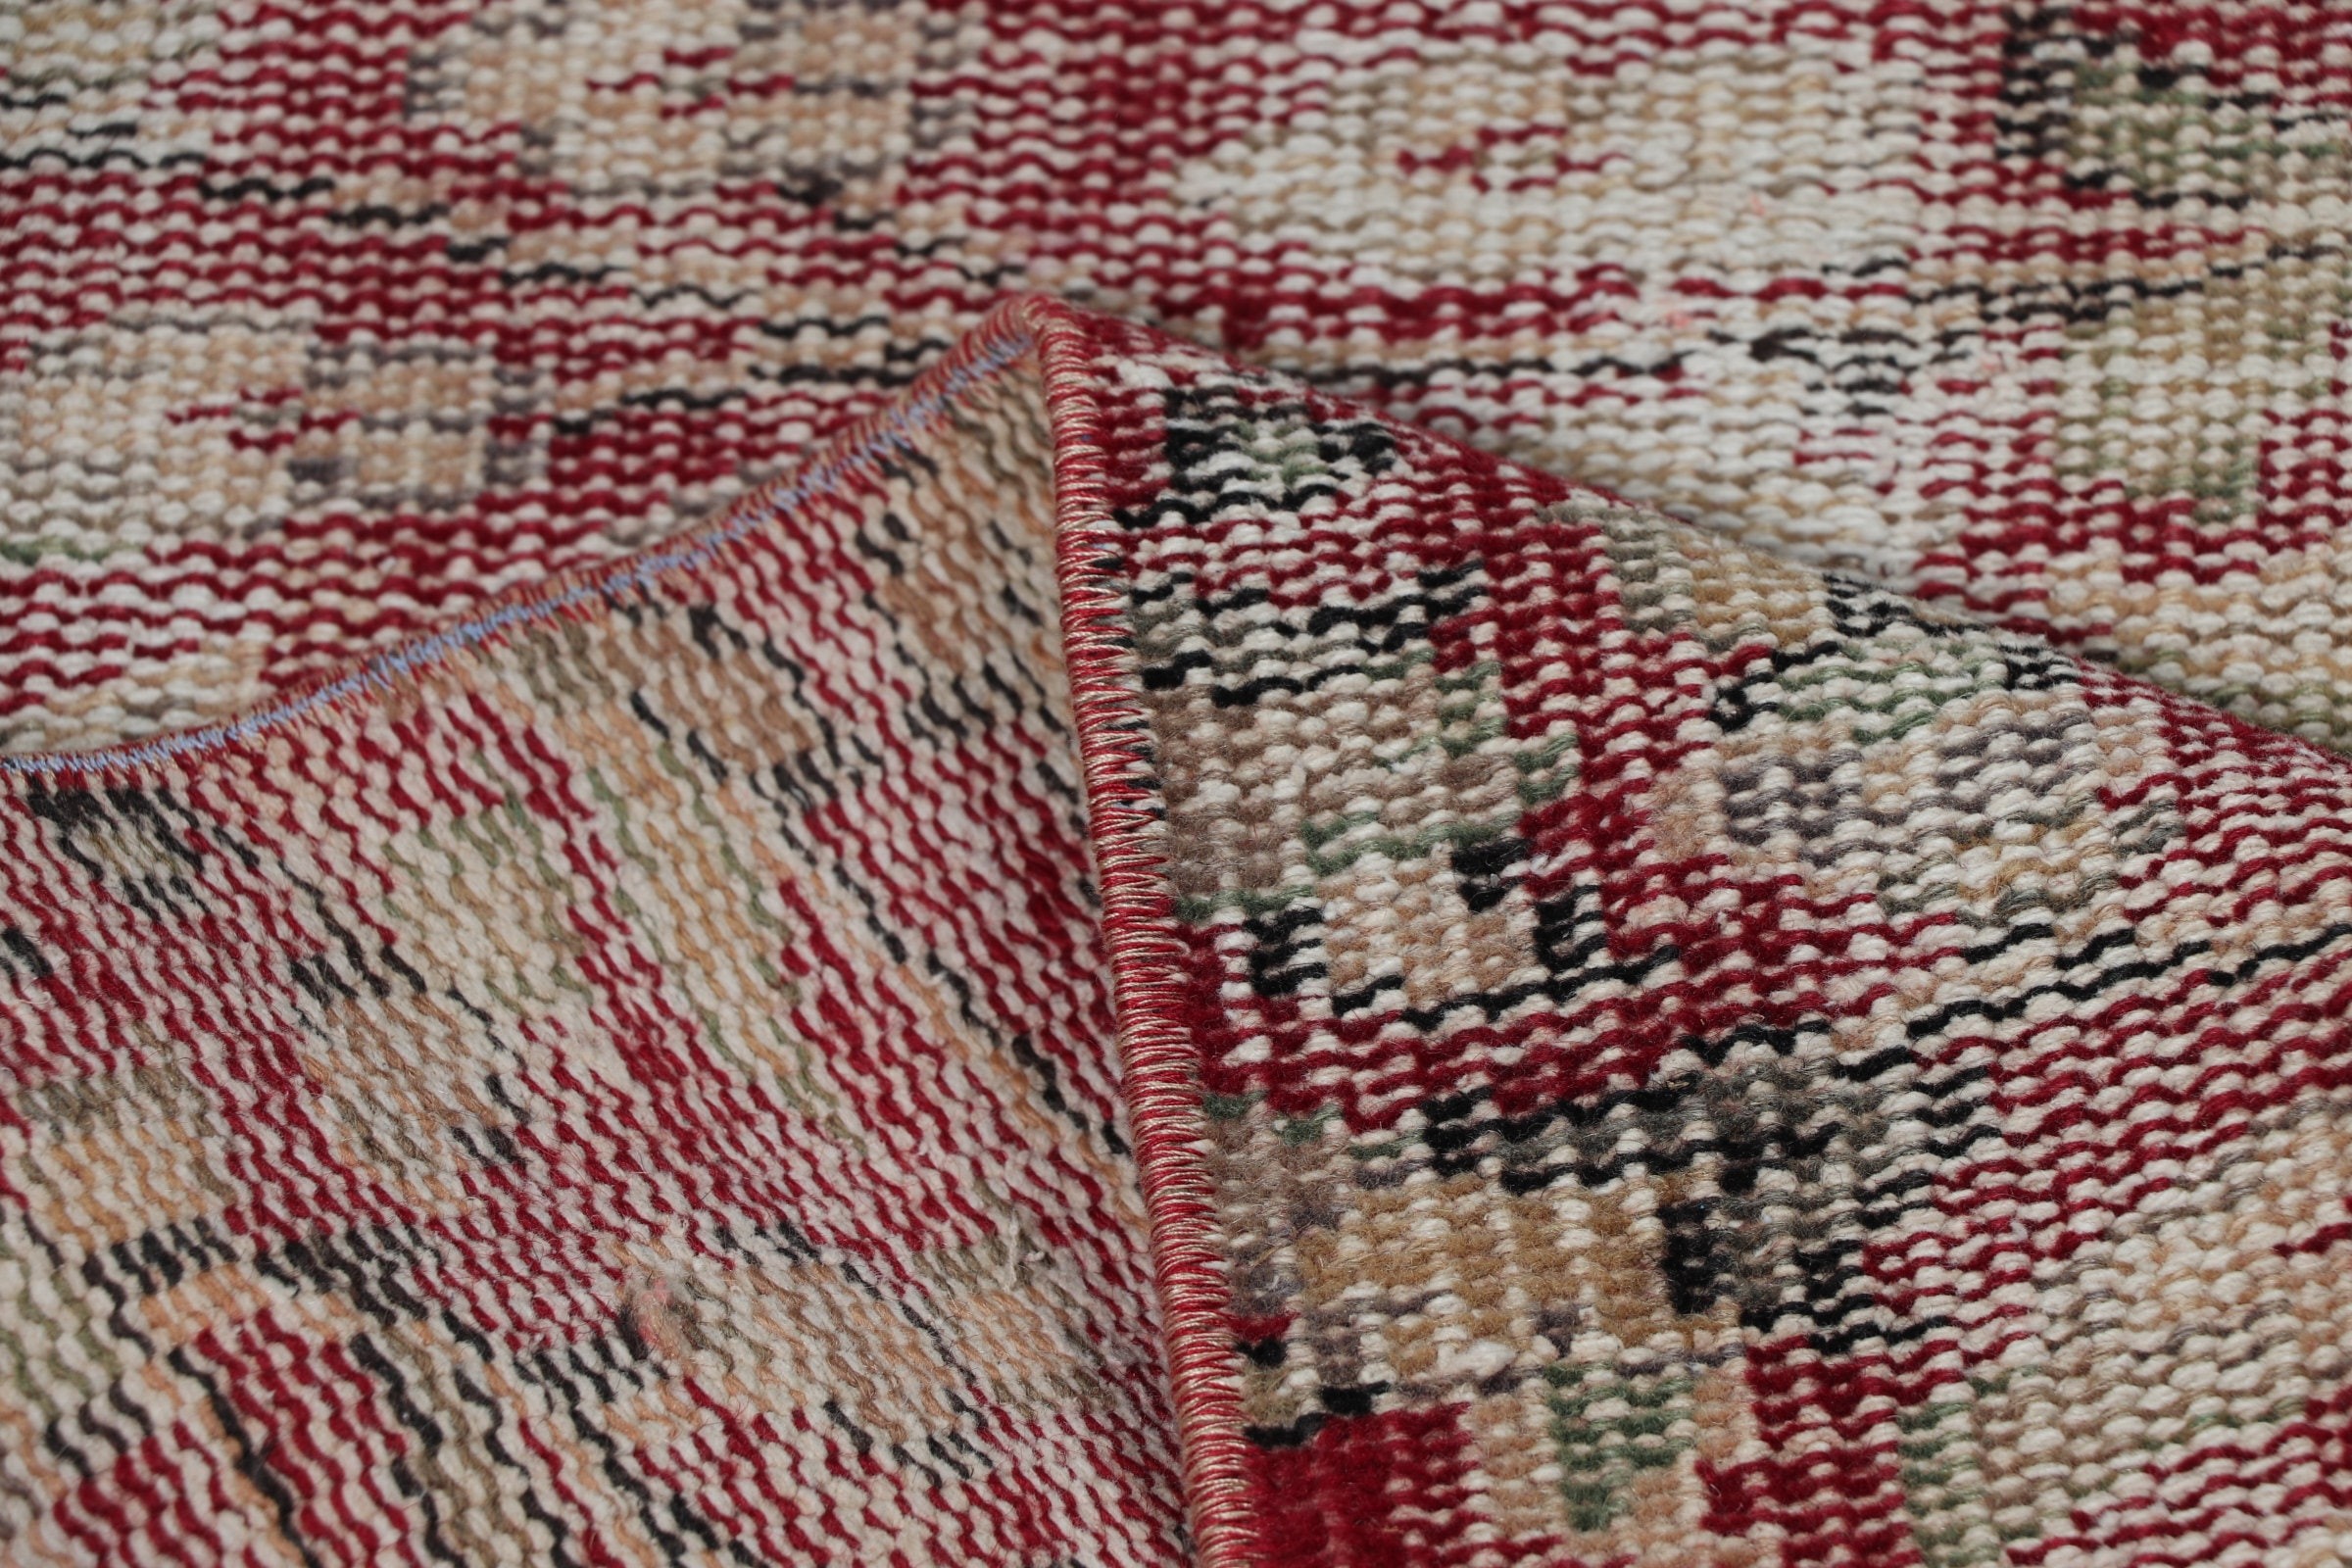 Red Wool Rug, Bedroom Rugs, Nursery Rugs, Turkish Rugs, 3.1x6.5 ft Accent Rug, Vintage Rug, Turkey Rugs, Anatolian Rug, Rugs for Bedroom